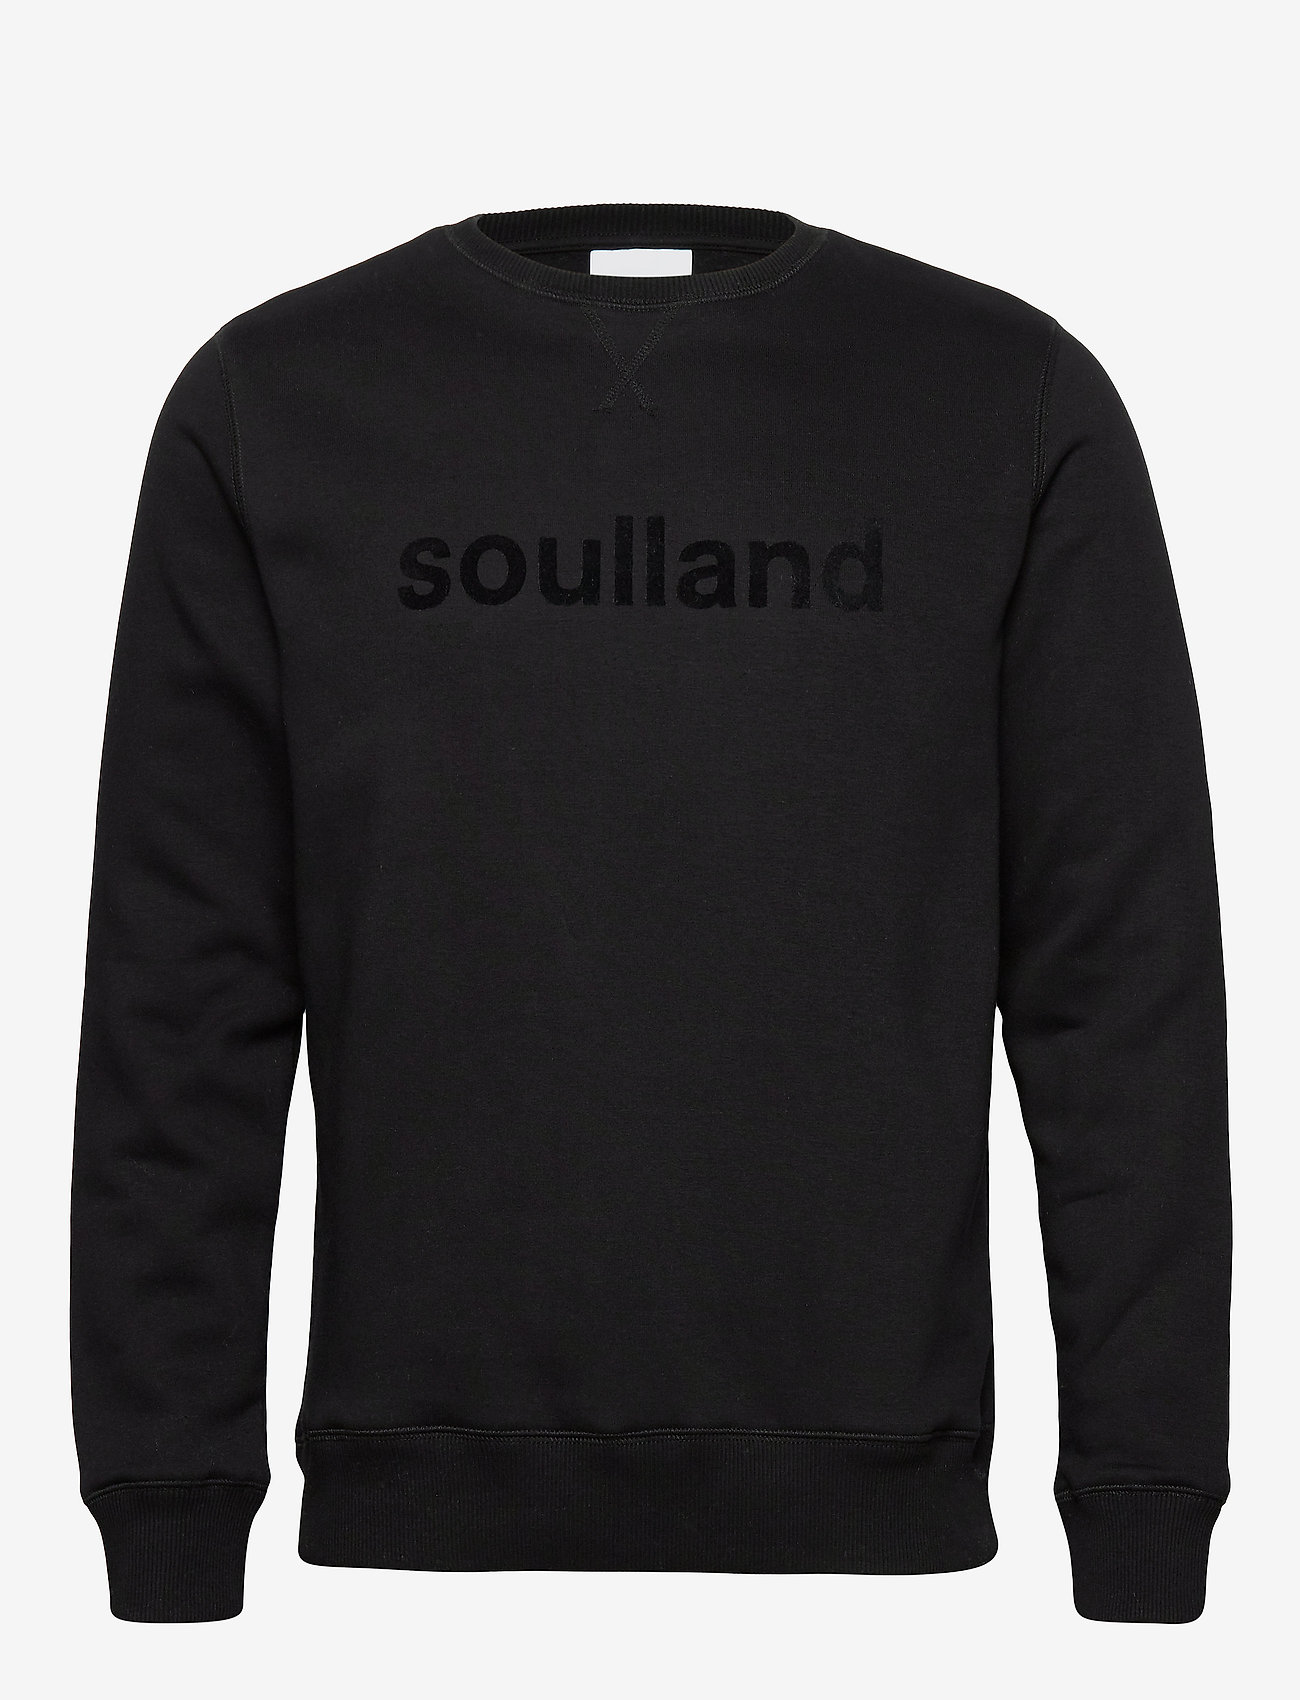 Soulland - Willie sweatshirt - hoodies - black - 0